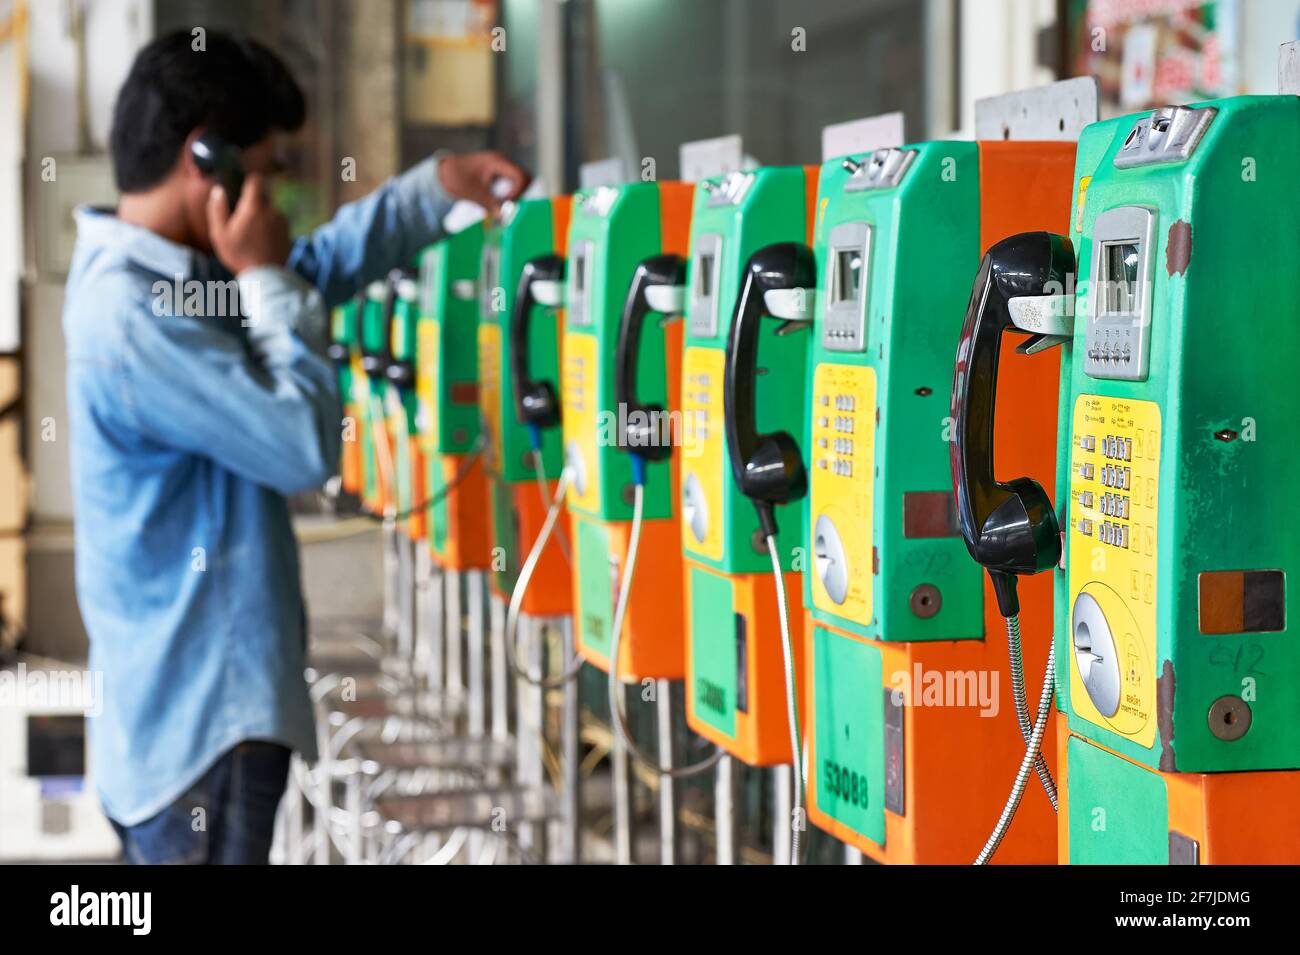 Una persona sta usando uno dei molti telefoni pubblici di colore verde e arancione tipici in una fila, collocati all'interno della stazione ferroviaria a Bangkok, Thailandia Foto Stock